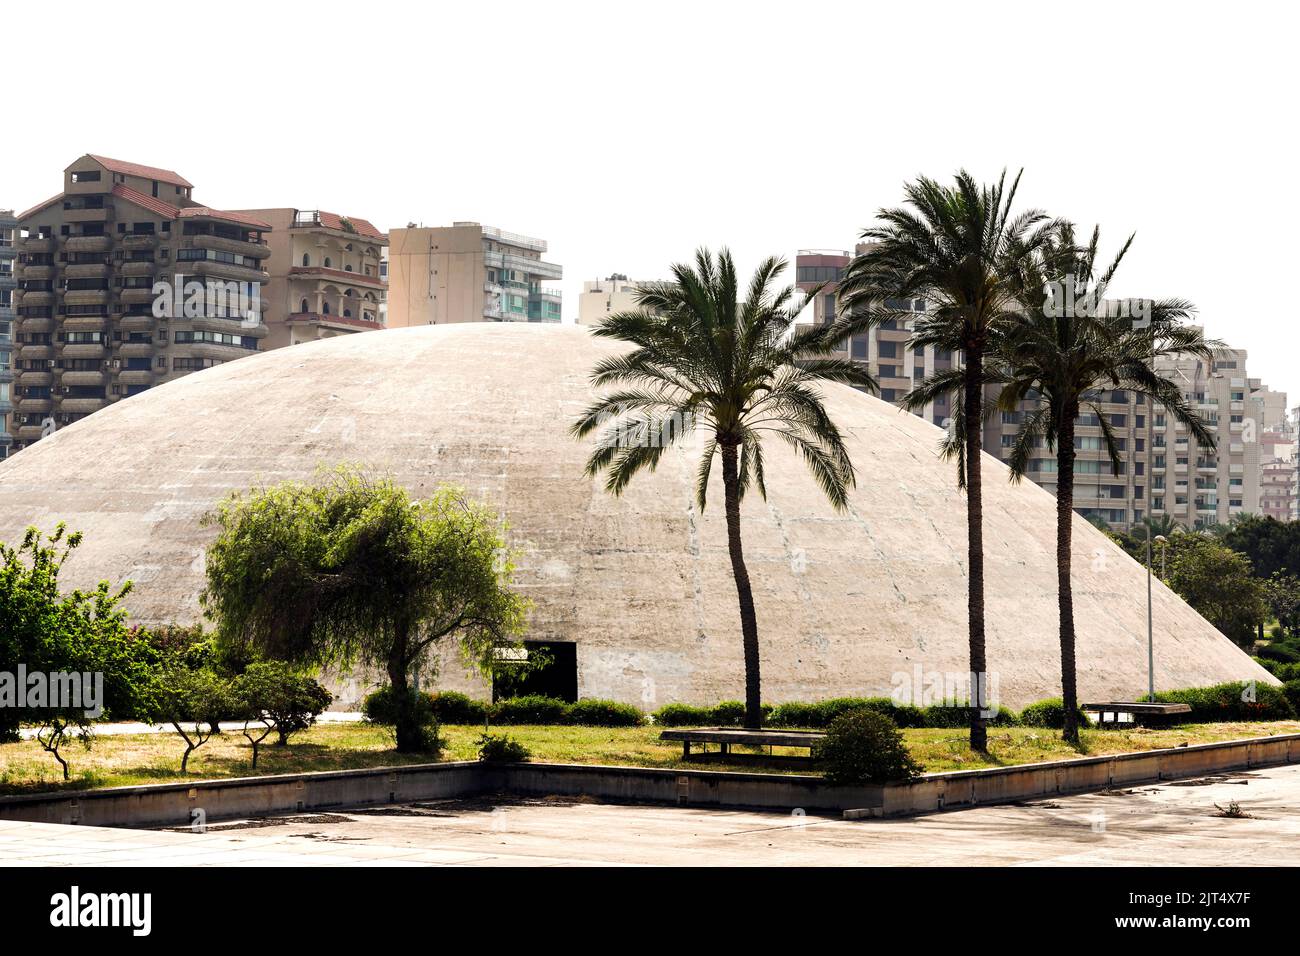 Der Architekt Oscar Niemeyer entwarf die Gebäude für das Internationale Messezentrum Rashid Karami in Tripolis, aber die Bauarbeiten wurden aufgrund des Ausbruchs des Bürgerkrieges nicht abgeschlossen. Tripolis, Libanon Stockfoto